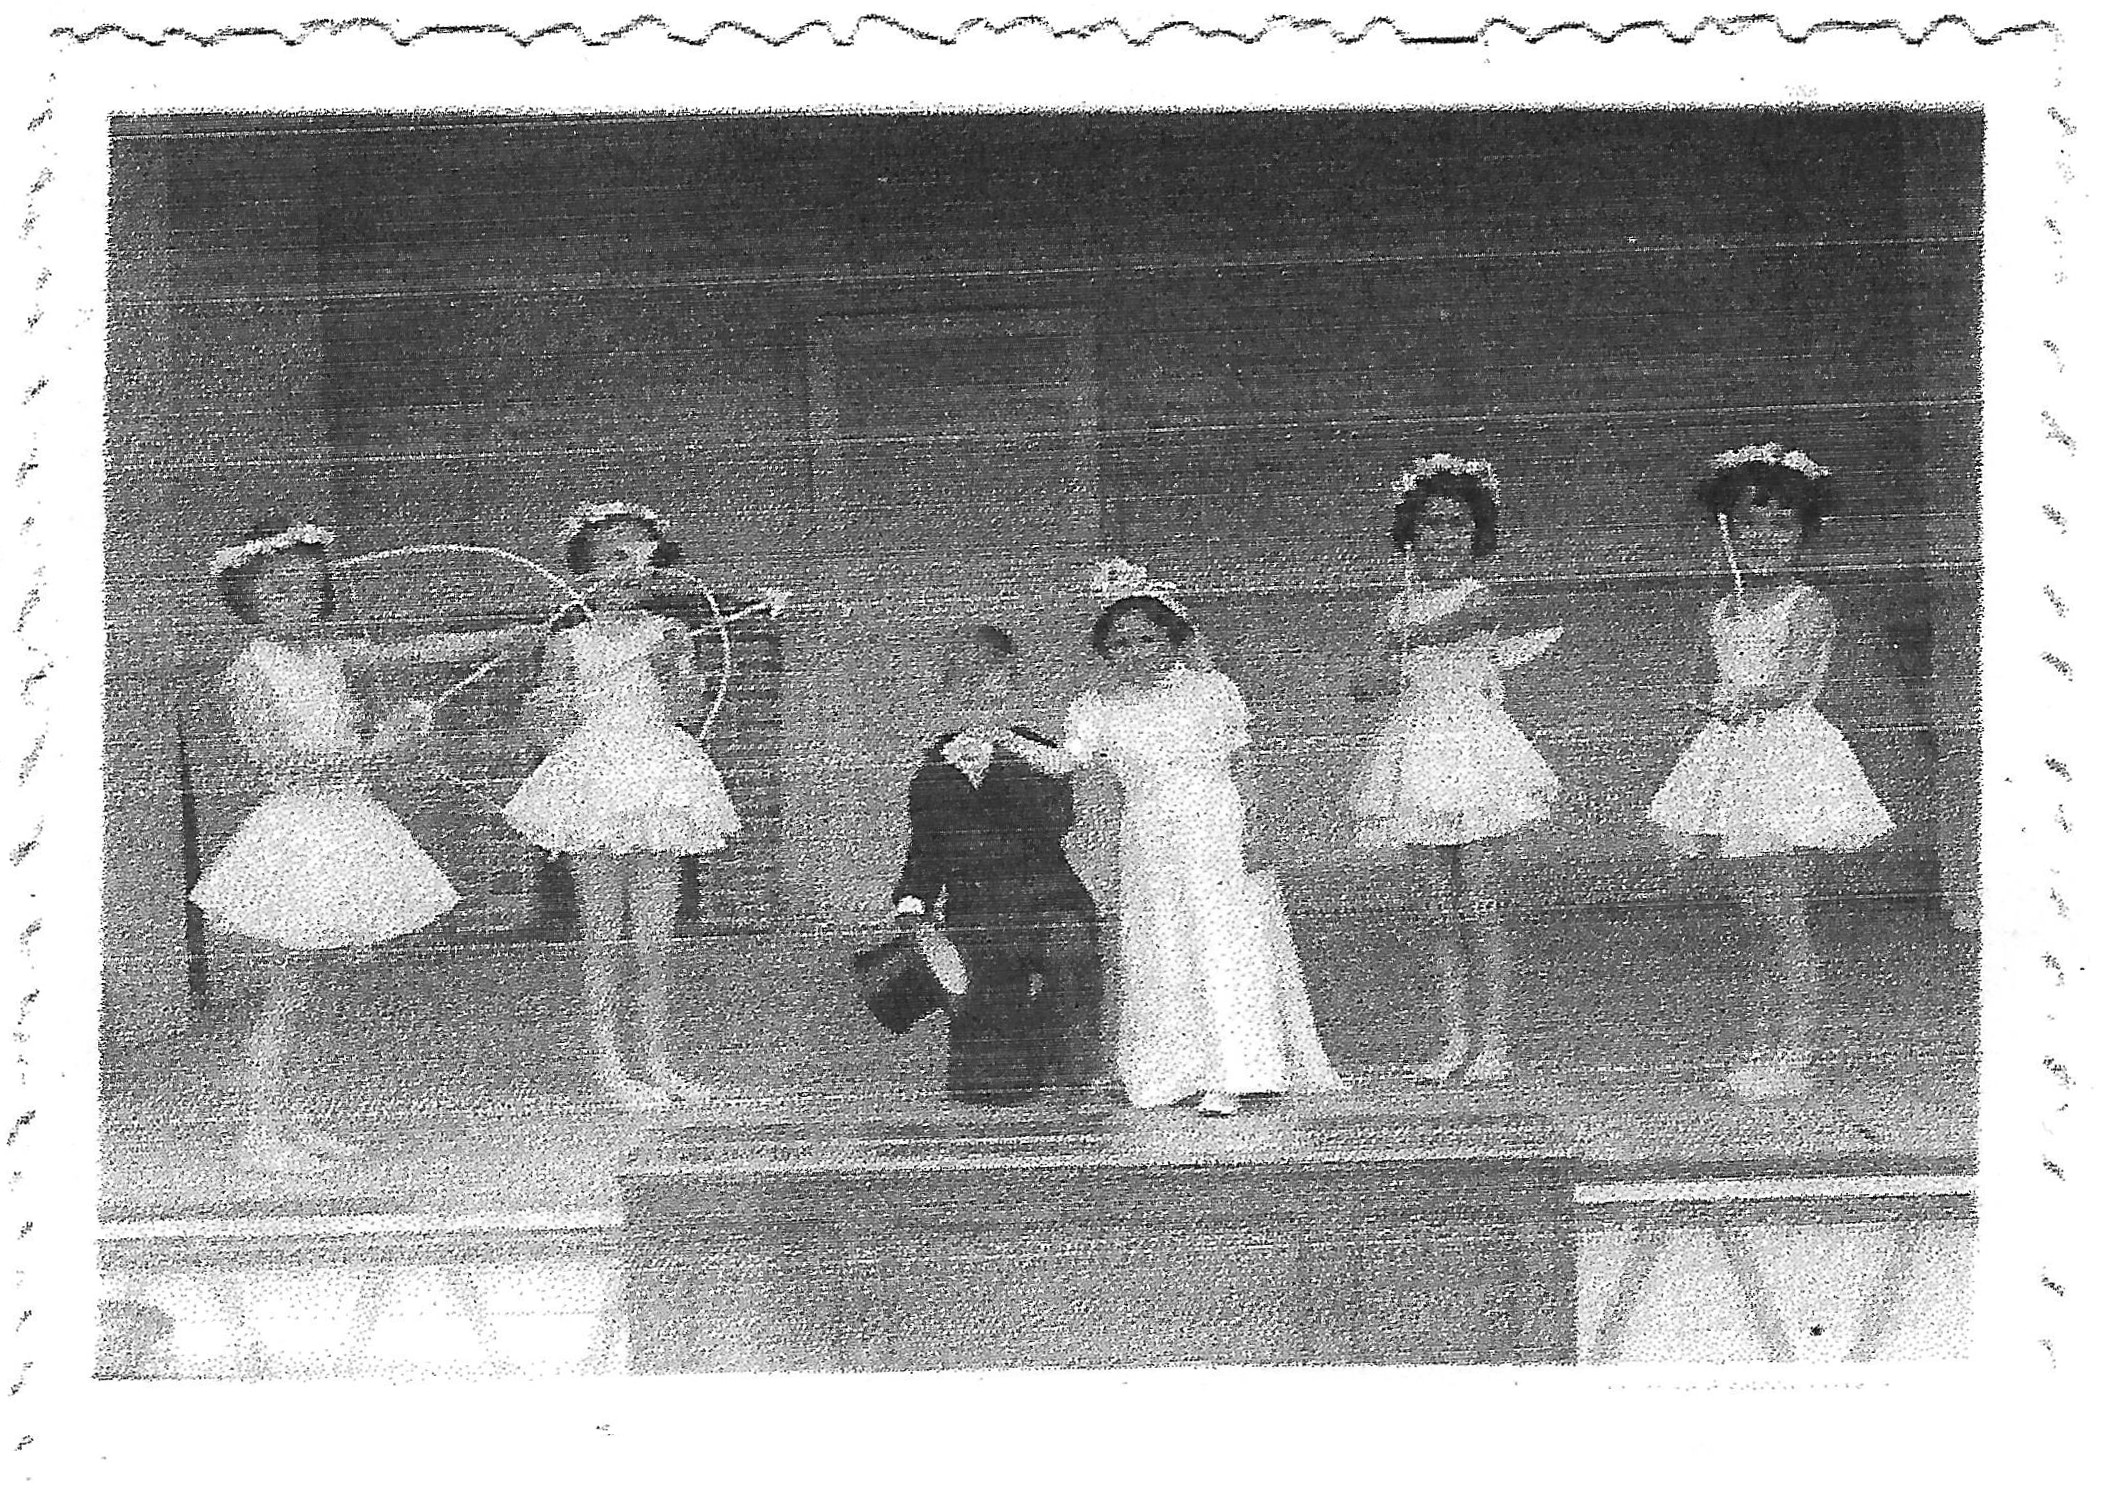 Le Ballet - lors d'un spectacle en 1951